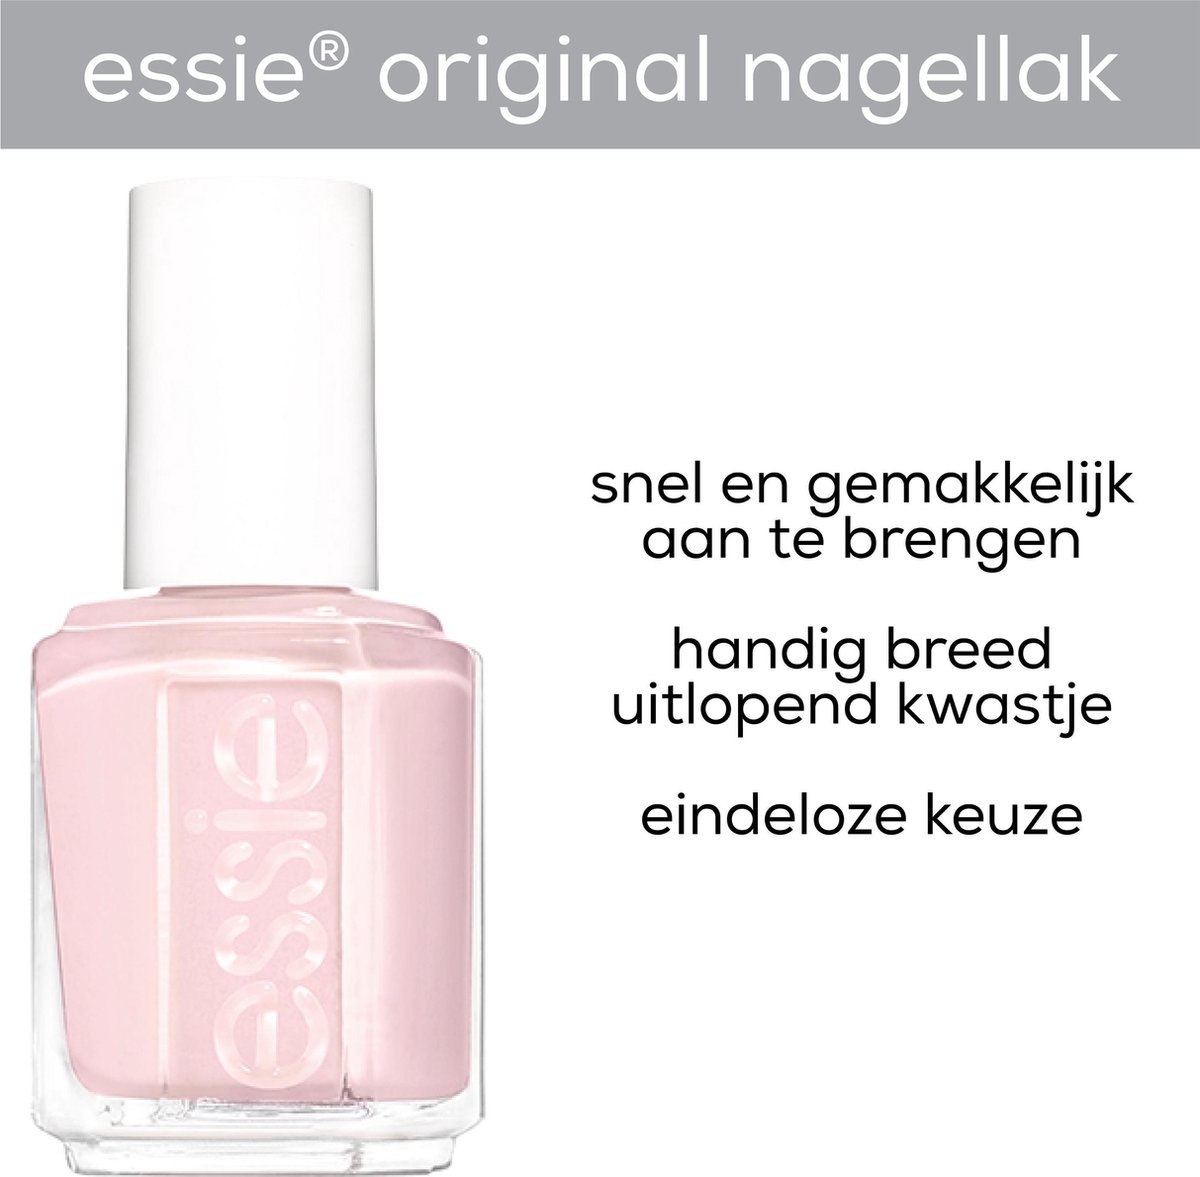 Essie Vanity Fairest 9 - Pink - Nail Polish - Onlinevoordeelshop